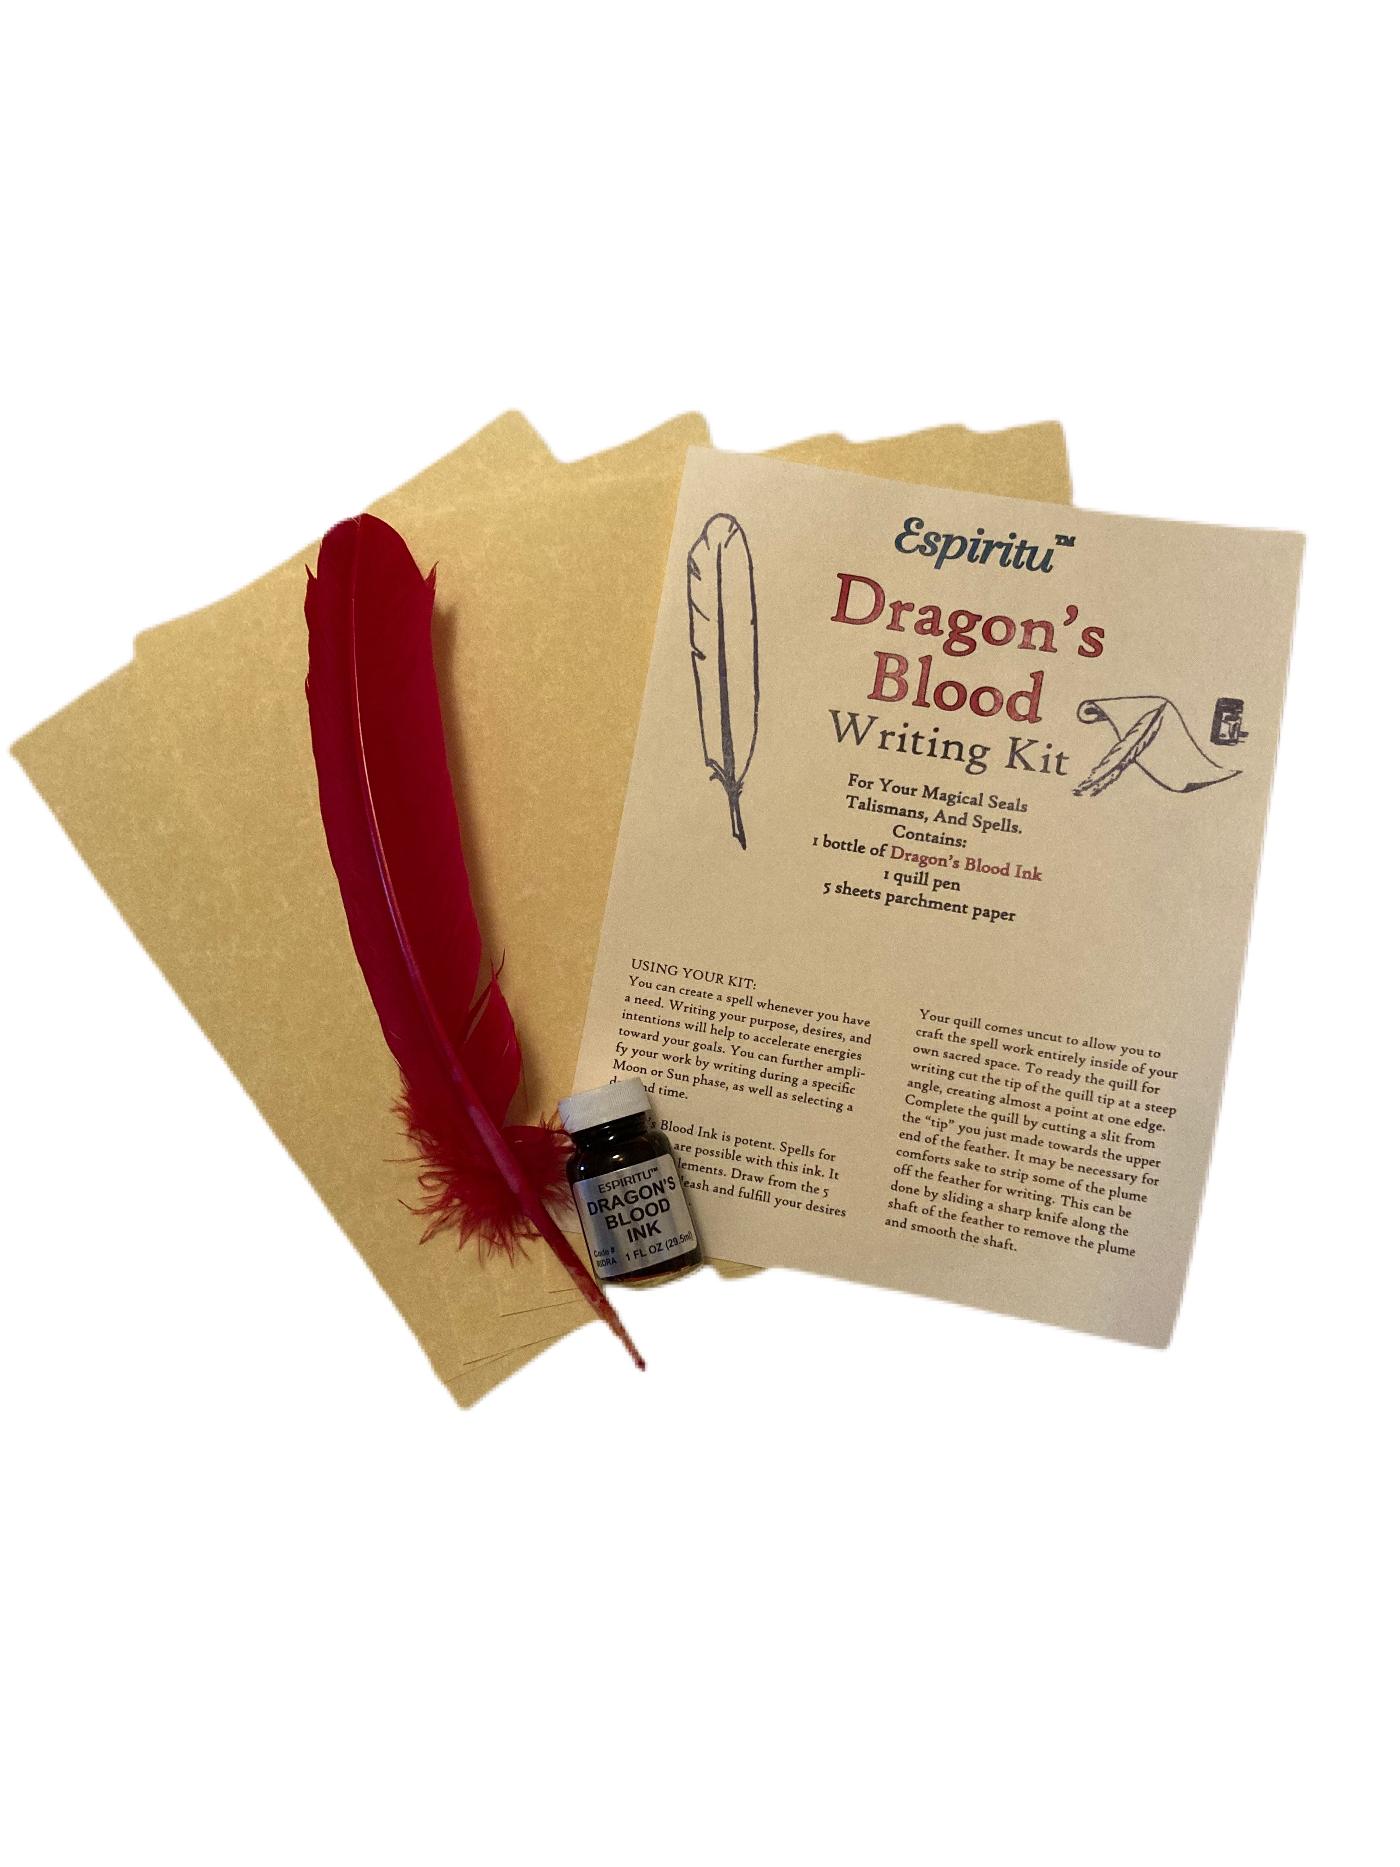 Dragons Blood Writing Kit